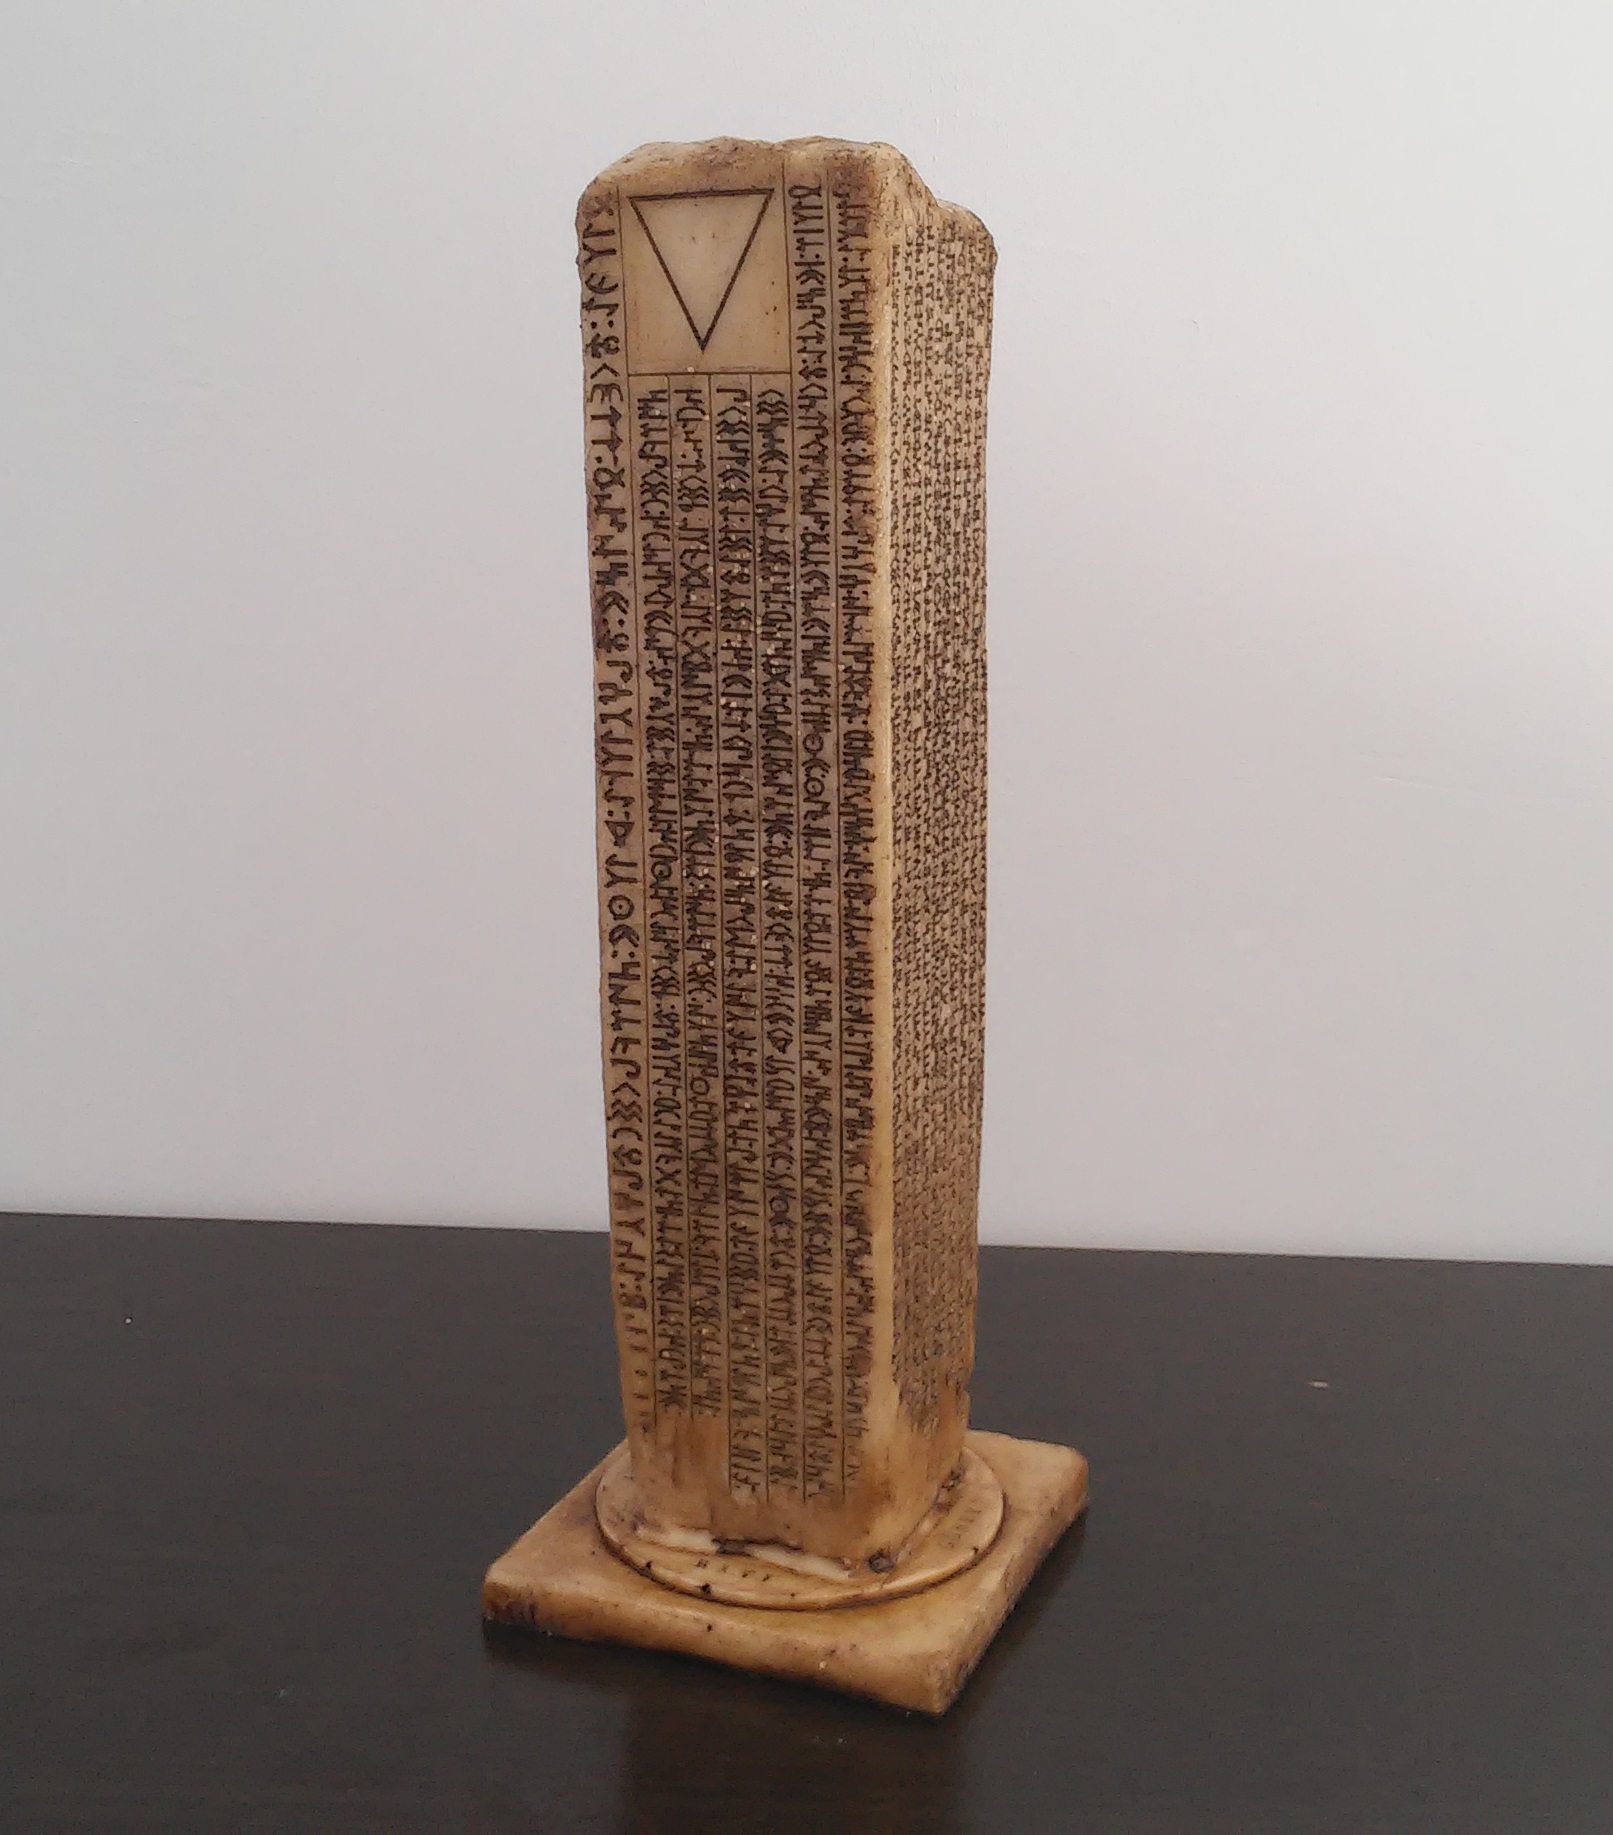 orhun anıtları kitabeleri yazıtları bilge kagan göktürk abideleri tonyukuk kültigin maketi biblosu kitabesi abidesi heykeli yazıtı yazıt anıt abide yapımı heykel